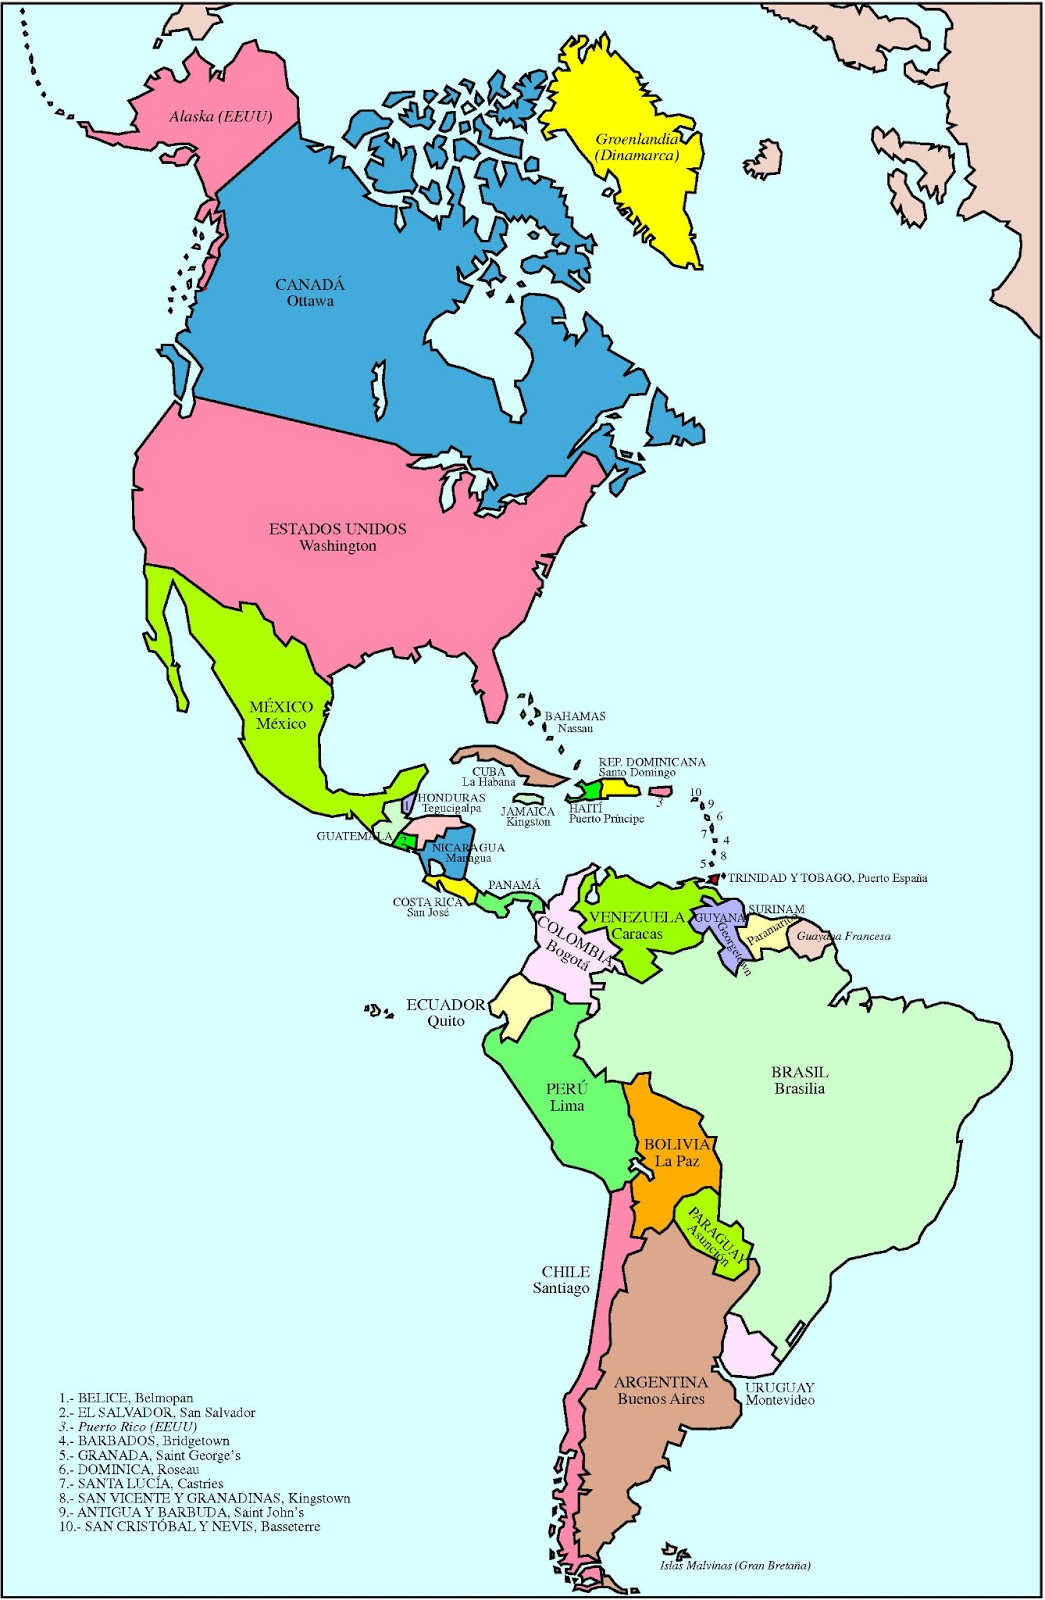 Atlas Geográfico: América